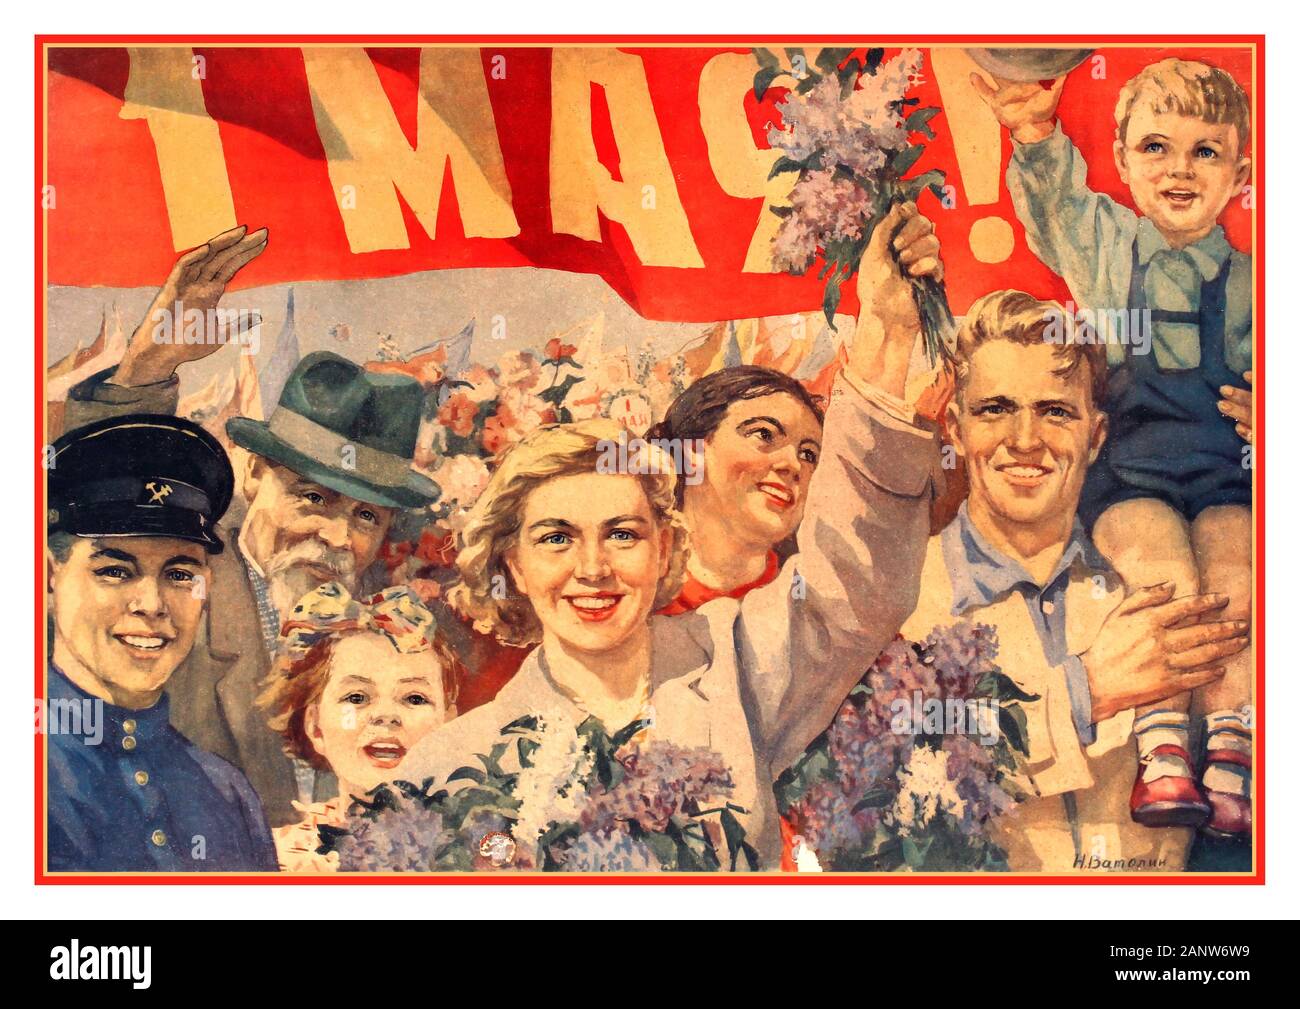 1 mai 1950 affiche de propagande russe soviétique célébrant les manifestations communistes du 1 mai en URSS. Dessin d'œuvres d'art de N. Vatolina montrant une foule de manifestants souriants, y compris des familles avec enfants, marchant sous une bannière rouge du 1 mai. Le 1er mai est un jour férié dans de nombreux pays du monde entier et est connu sous le nom de Labour and Spring Day en URSS soviétique Russie Banque D'Images